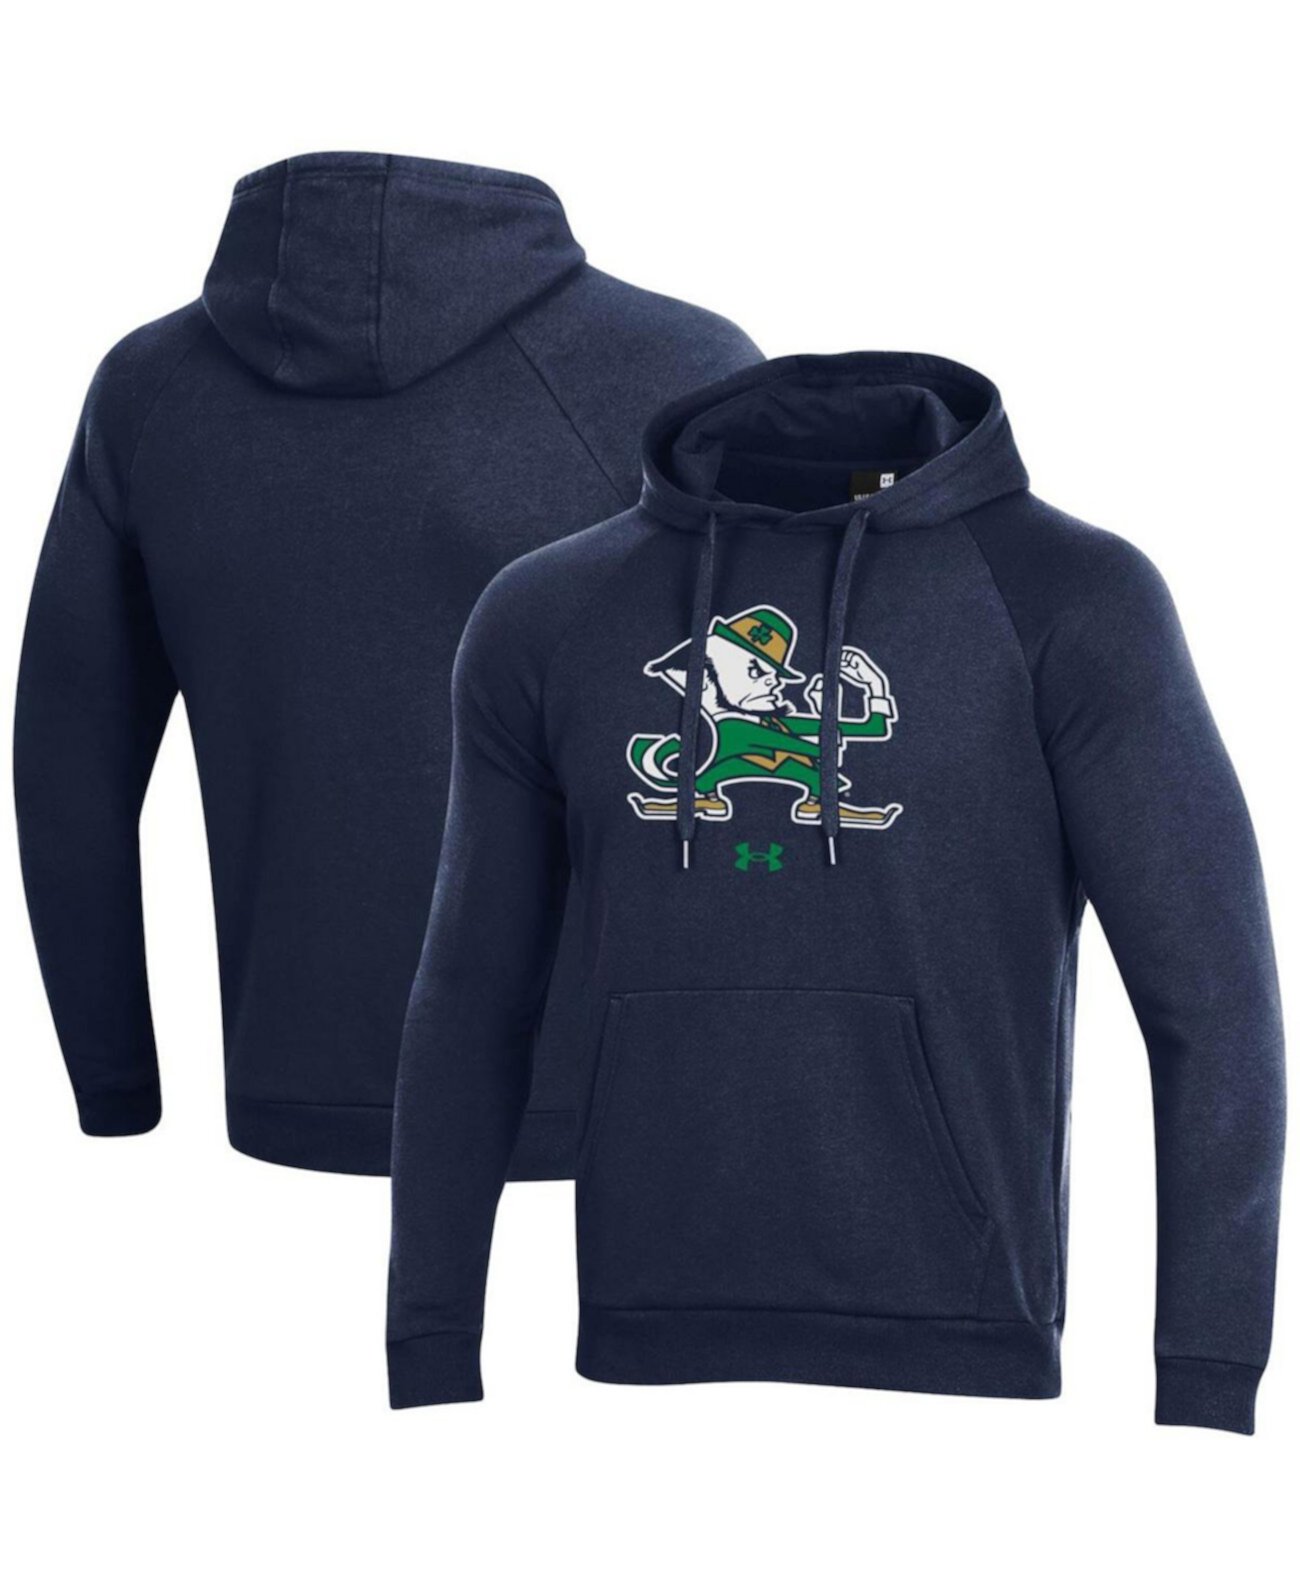 Мужской темно-синий пуловер с капюшоном реглан и логотипом ирландской школы талисманов Нотр-Дам Under Armour